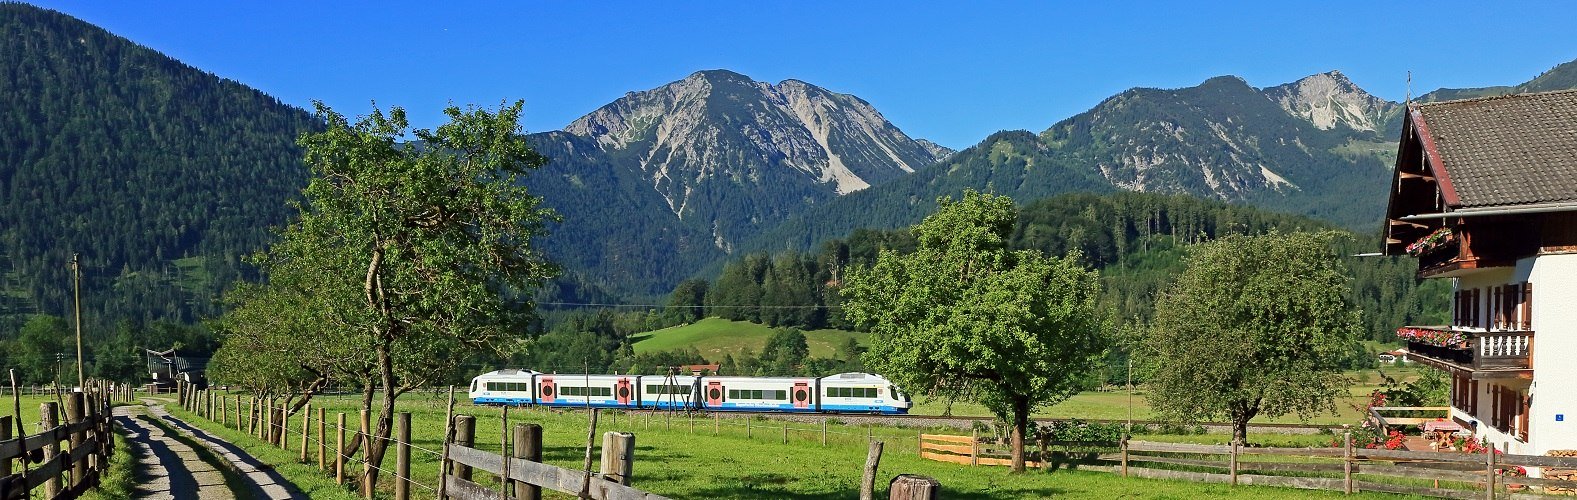 Die Bayerische Oberlandbahn auf der Strecke München-Bayrischzell, © Uwe Miethe